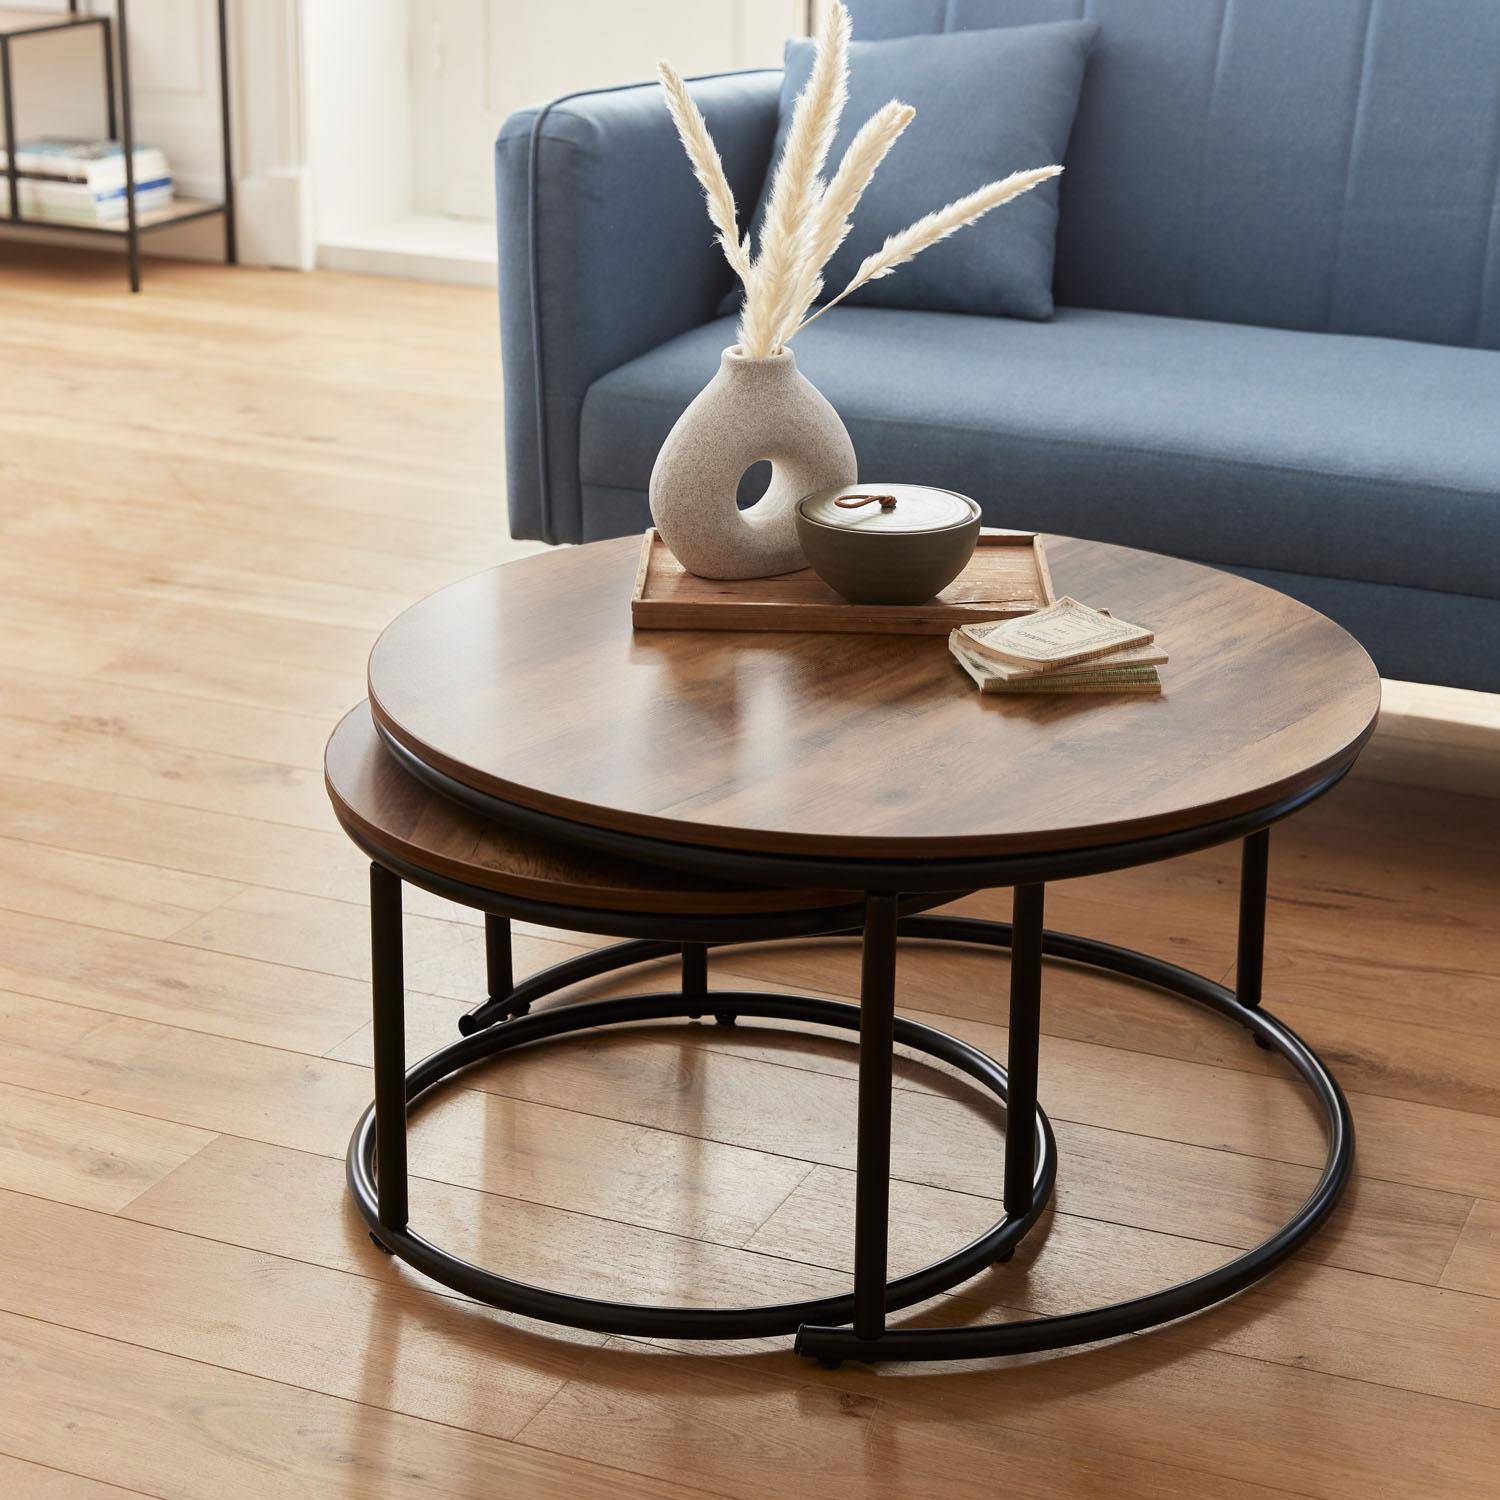 Set 2 ronde inschuifbare lage tafels van zwart metaal en een blad met houtlook, 1x Ø77xh40cm / x1 Ø57xh35cm Photo3